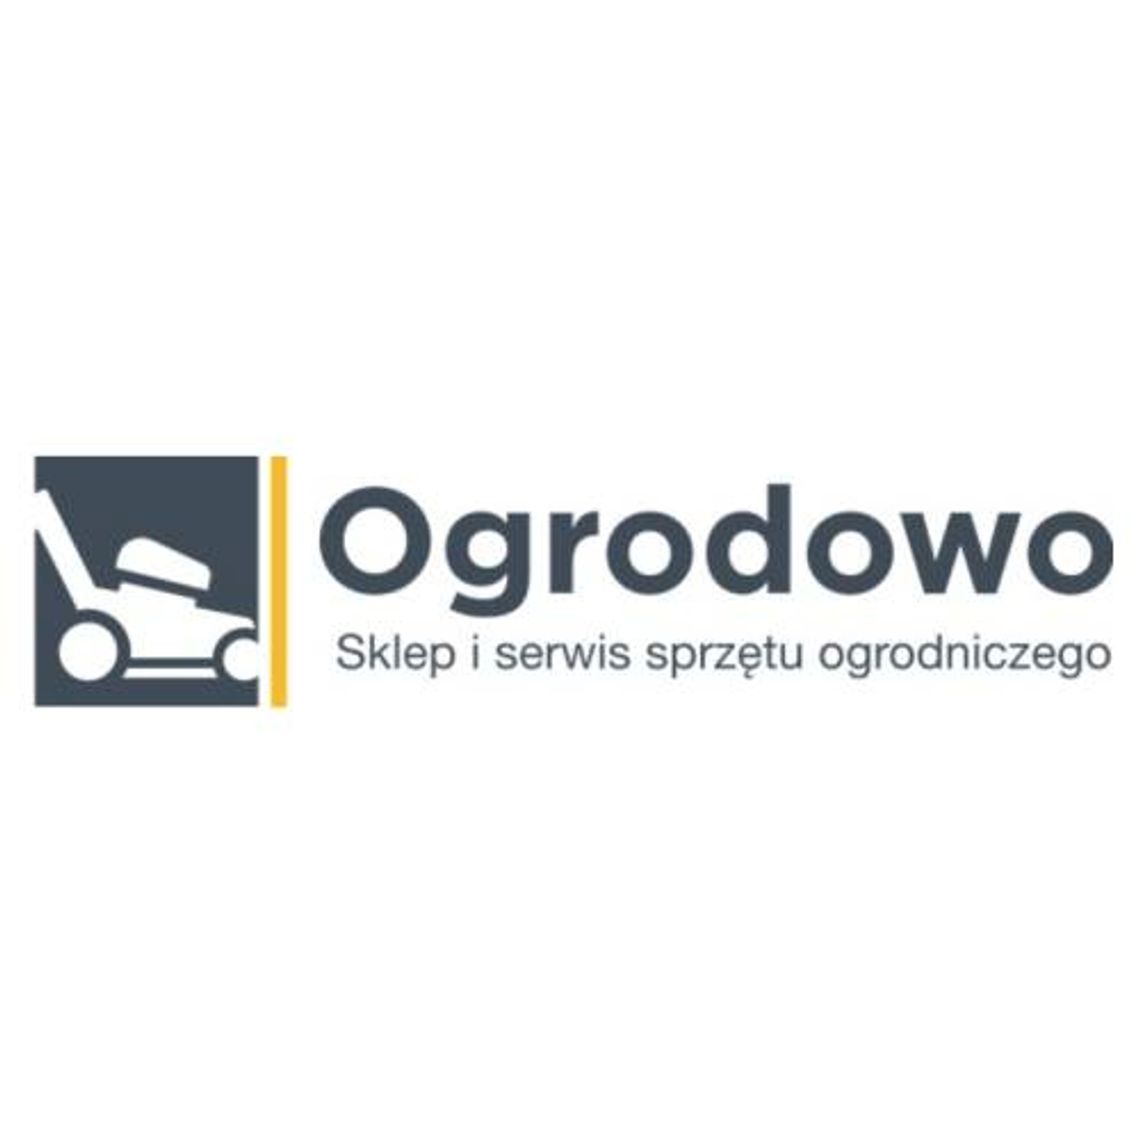 Eogrodowo.pl - sprzedaż i serwis urządzeń ogrodniczych 